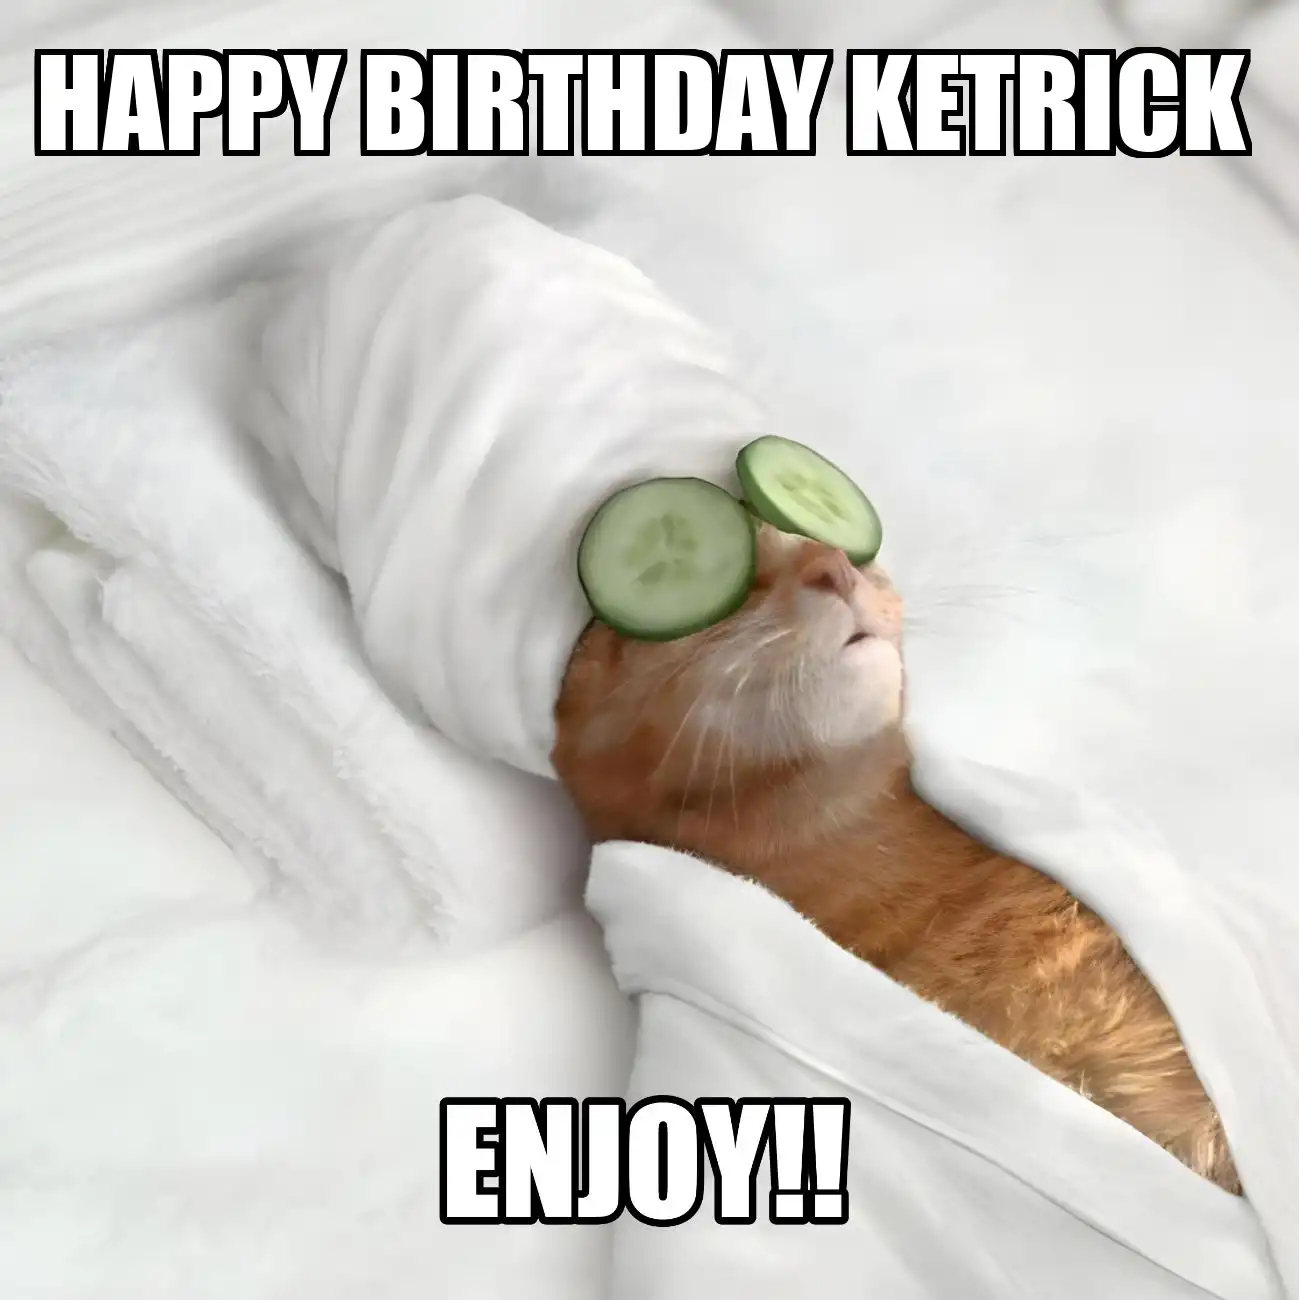 Happy Birthday Ketrick Enjoy Cat Meme